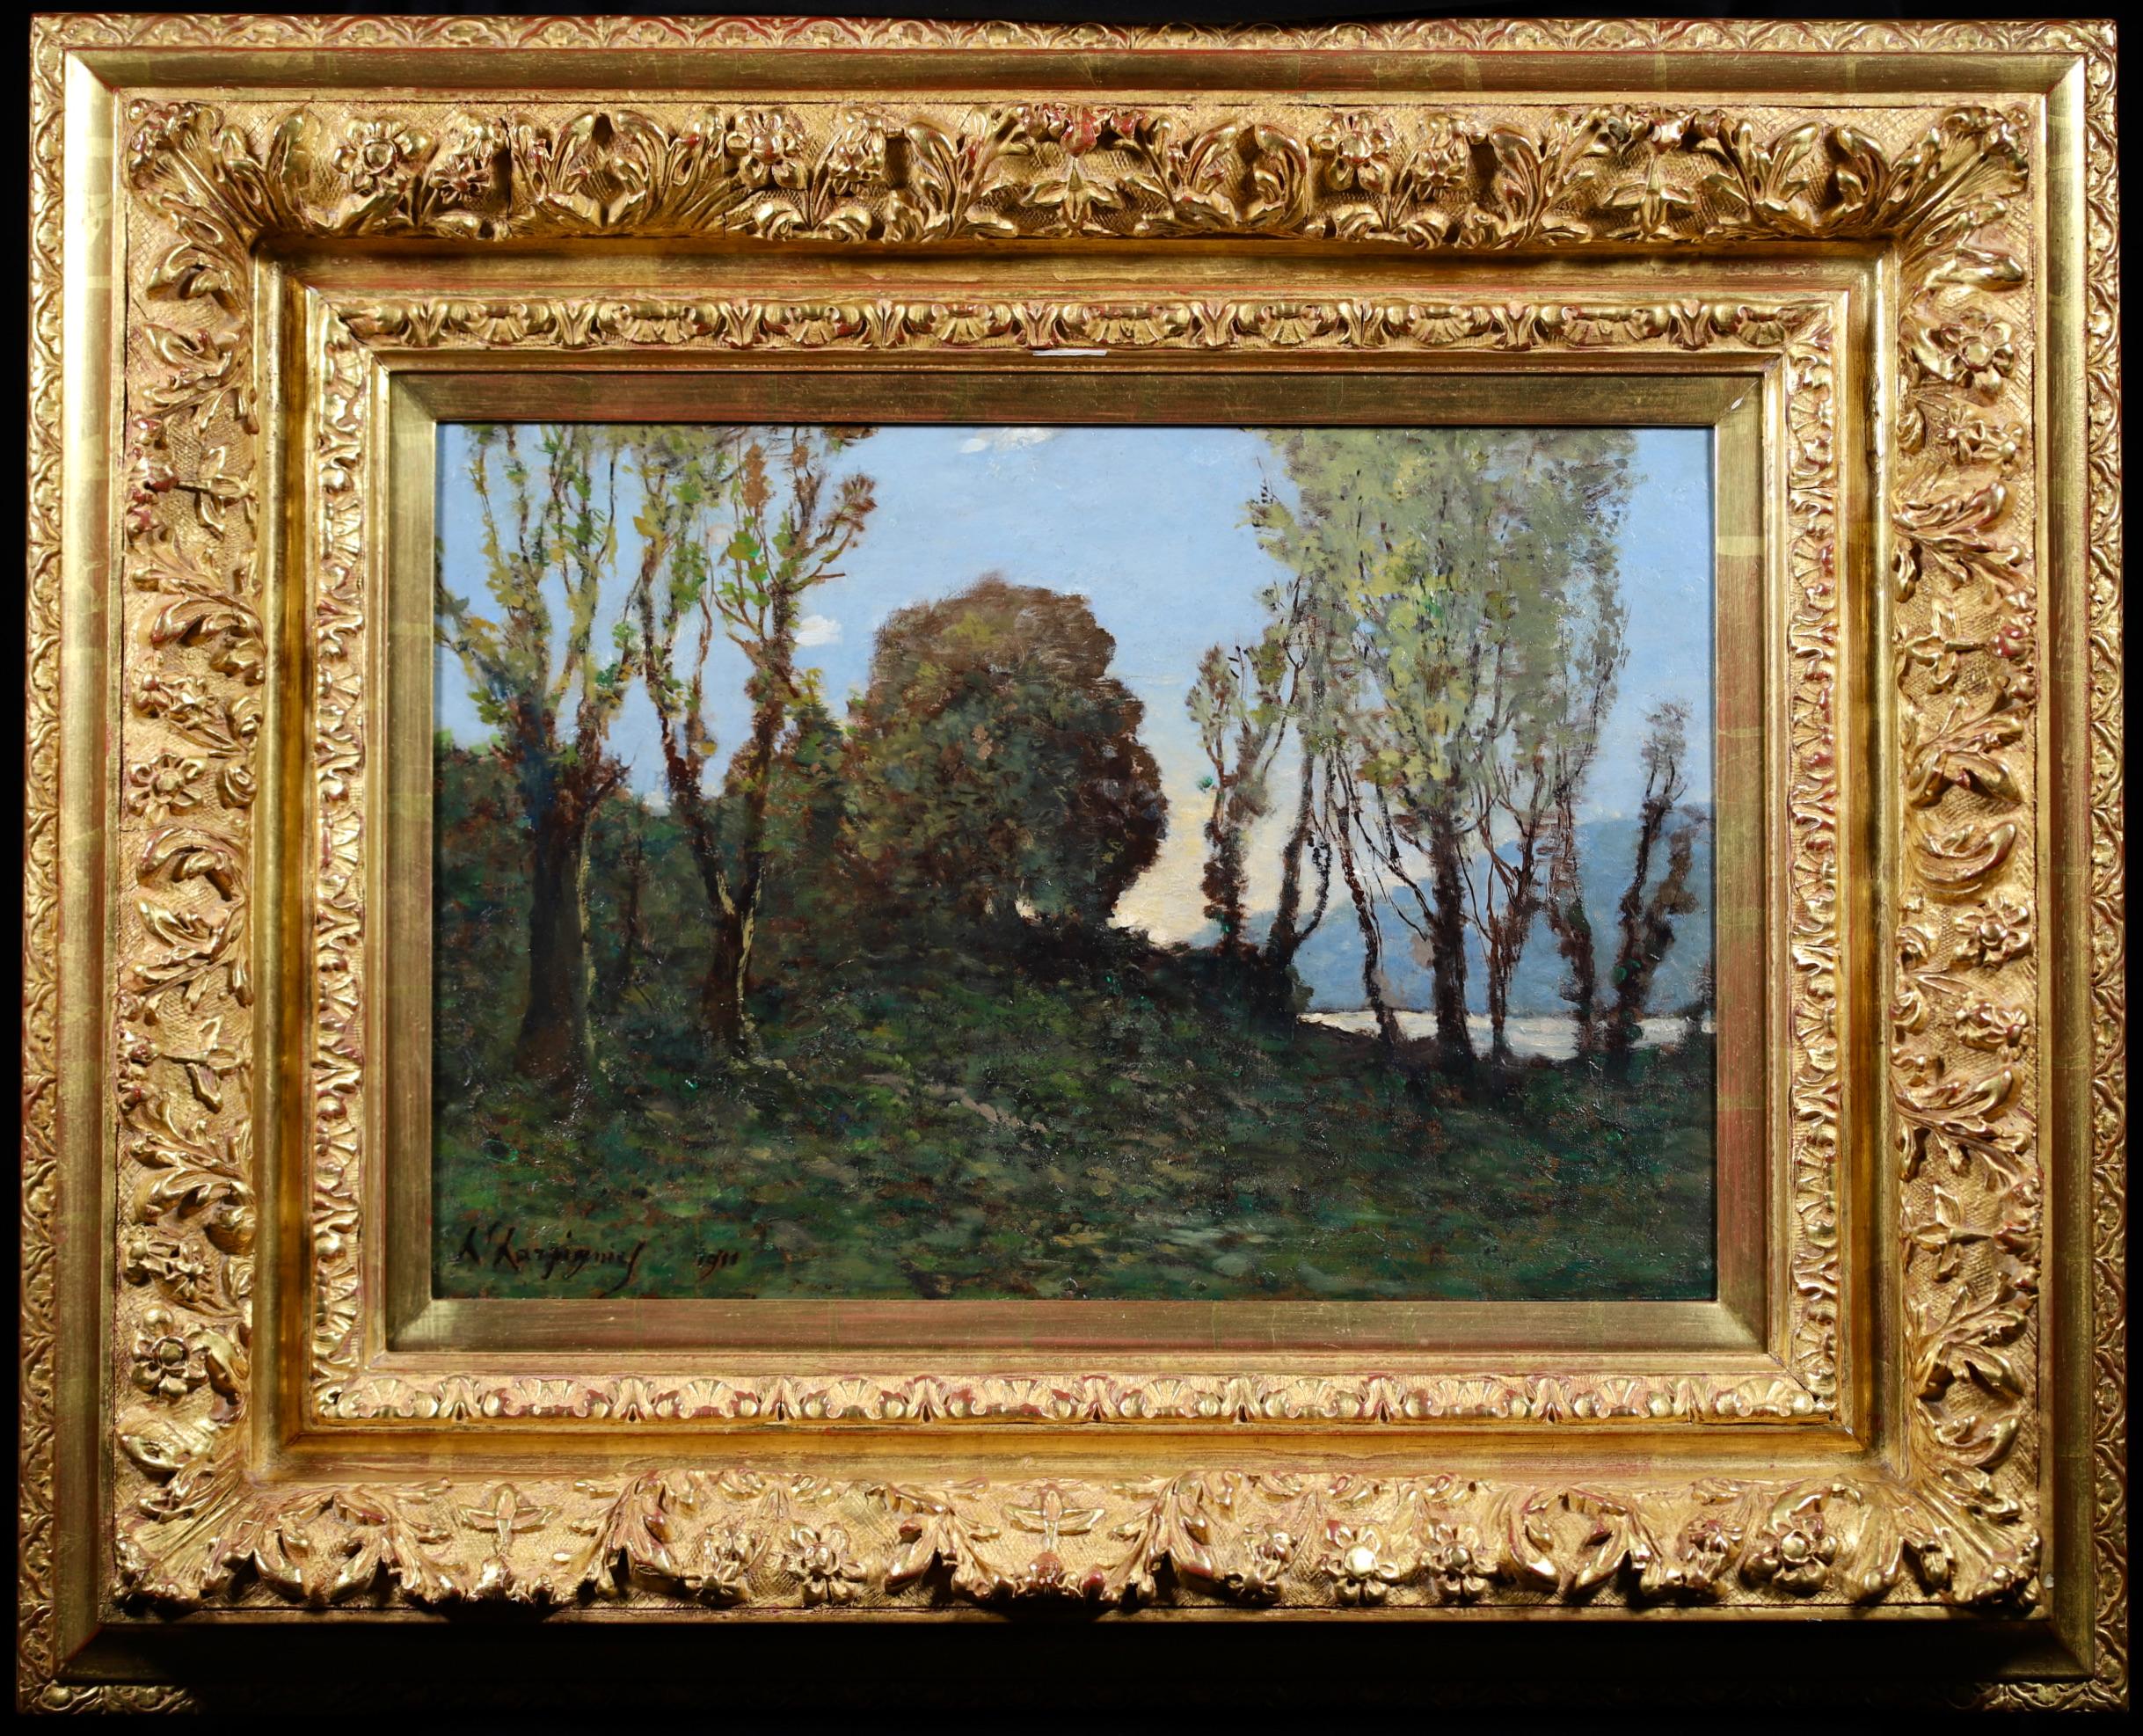 Signiert und datiert Barbizon Schule Landschaft Öl auf Platte von Französisch Maler Henri Joseph Harpignies. Das Werk zeigt die Bäume am Ufer des Loing bei Saint Prive in Nordfrankreich.

Unterschrift:
Signiert und datiert 1911 unten